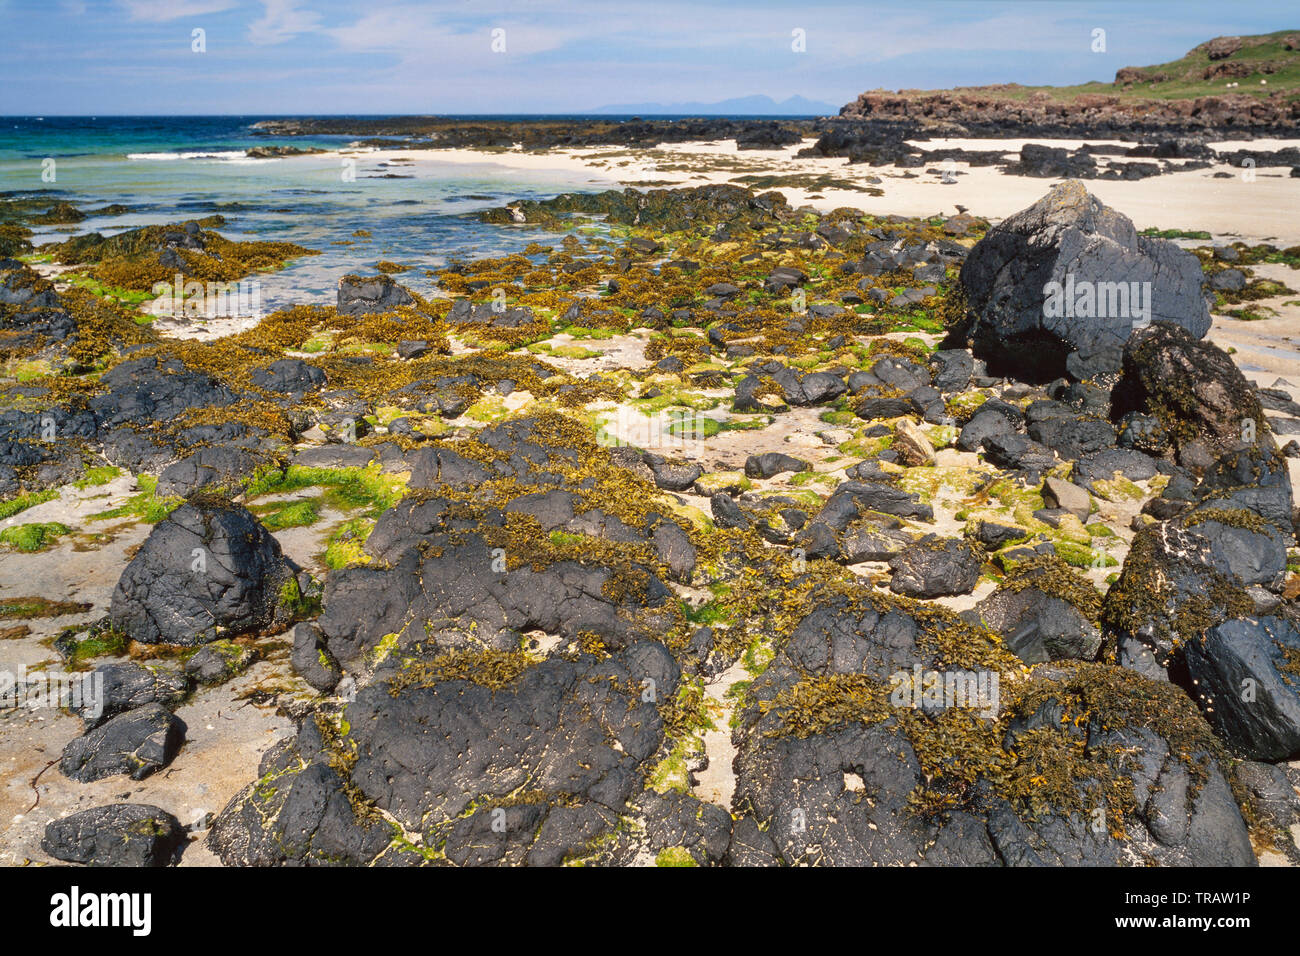 Ardnamurchan zona, Western Highlands, Escocia, Escena de playa con una mezcla de algas en las rocas, playa de arena limpia Foto de stock